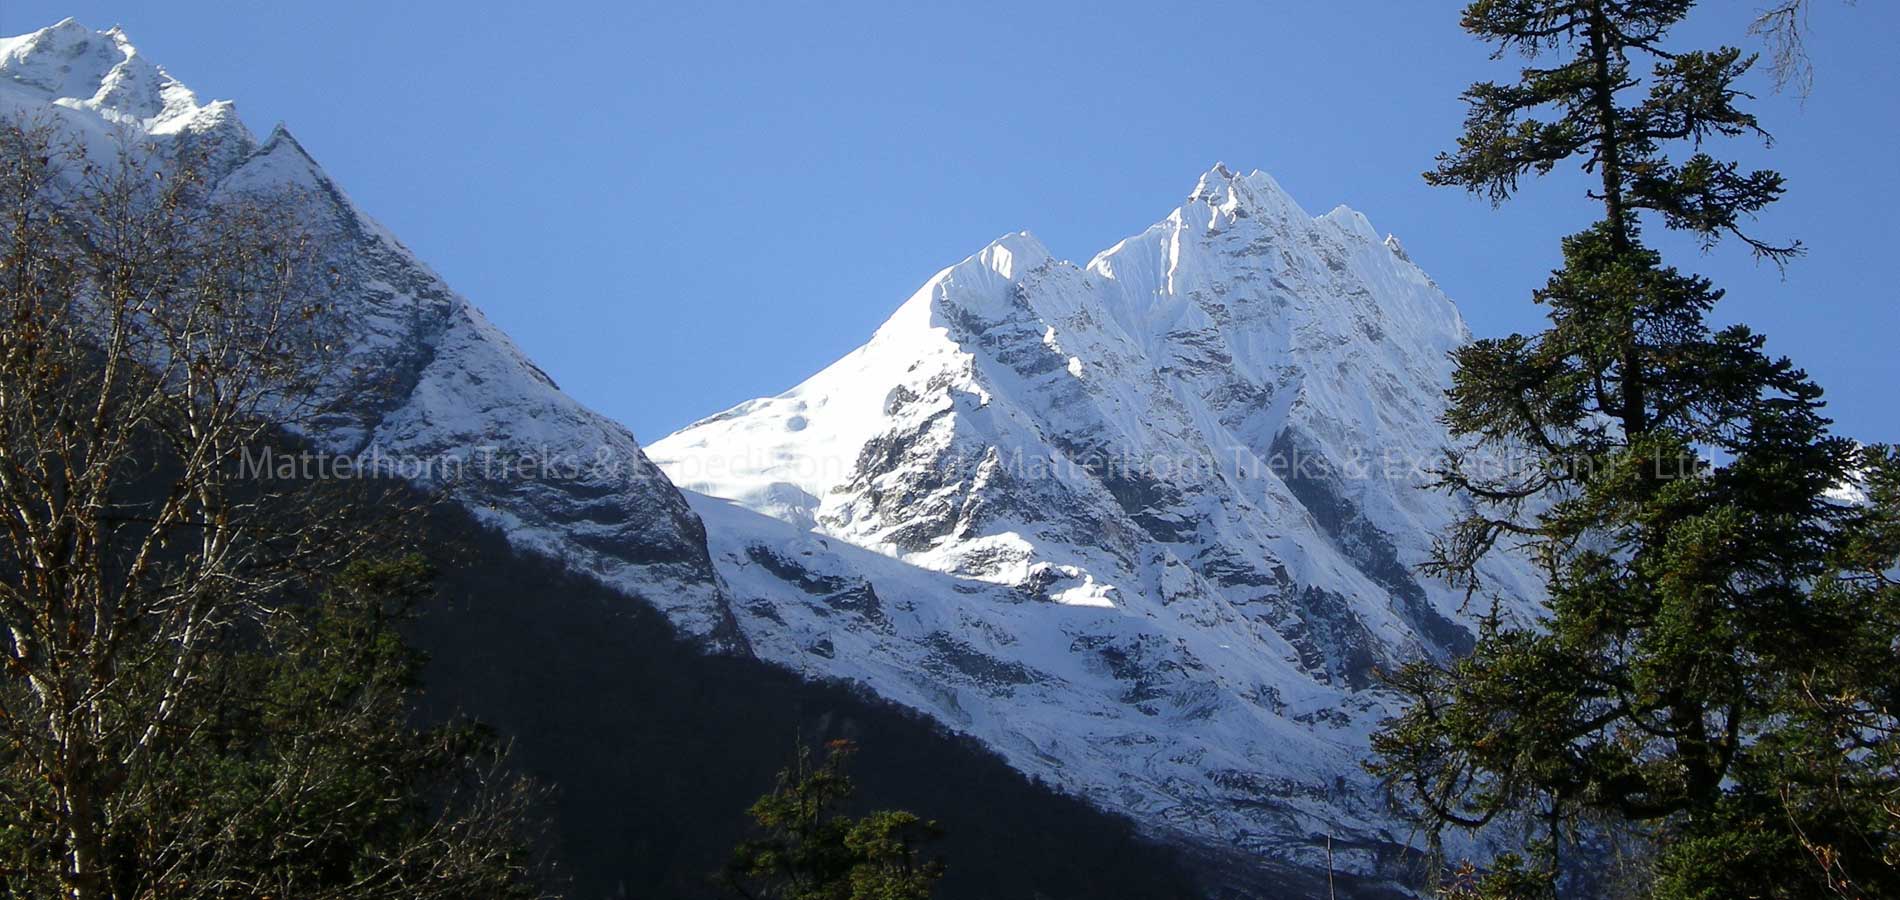 Matterhorn Treks & Expedition P. Ltd